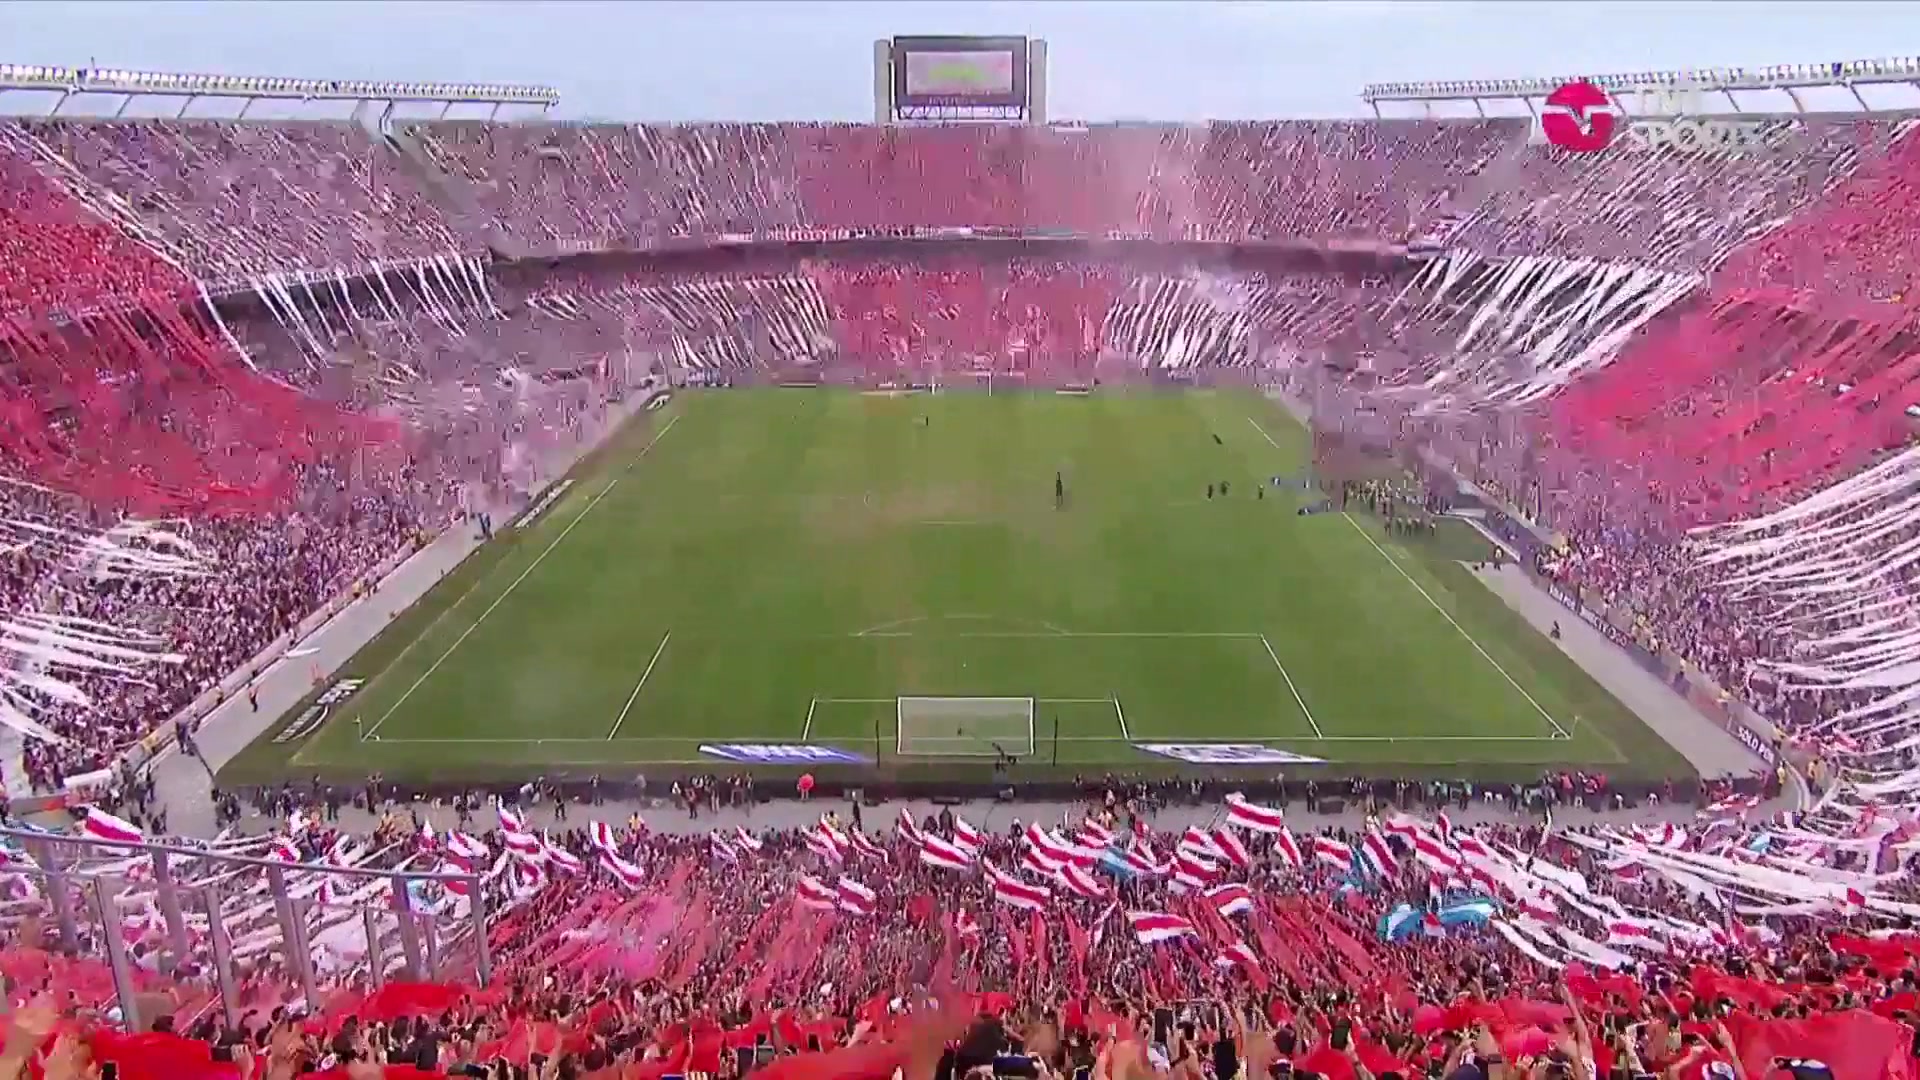 感受一下今天阿根廷“超级德比”纪念碑球场的壮观